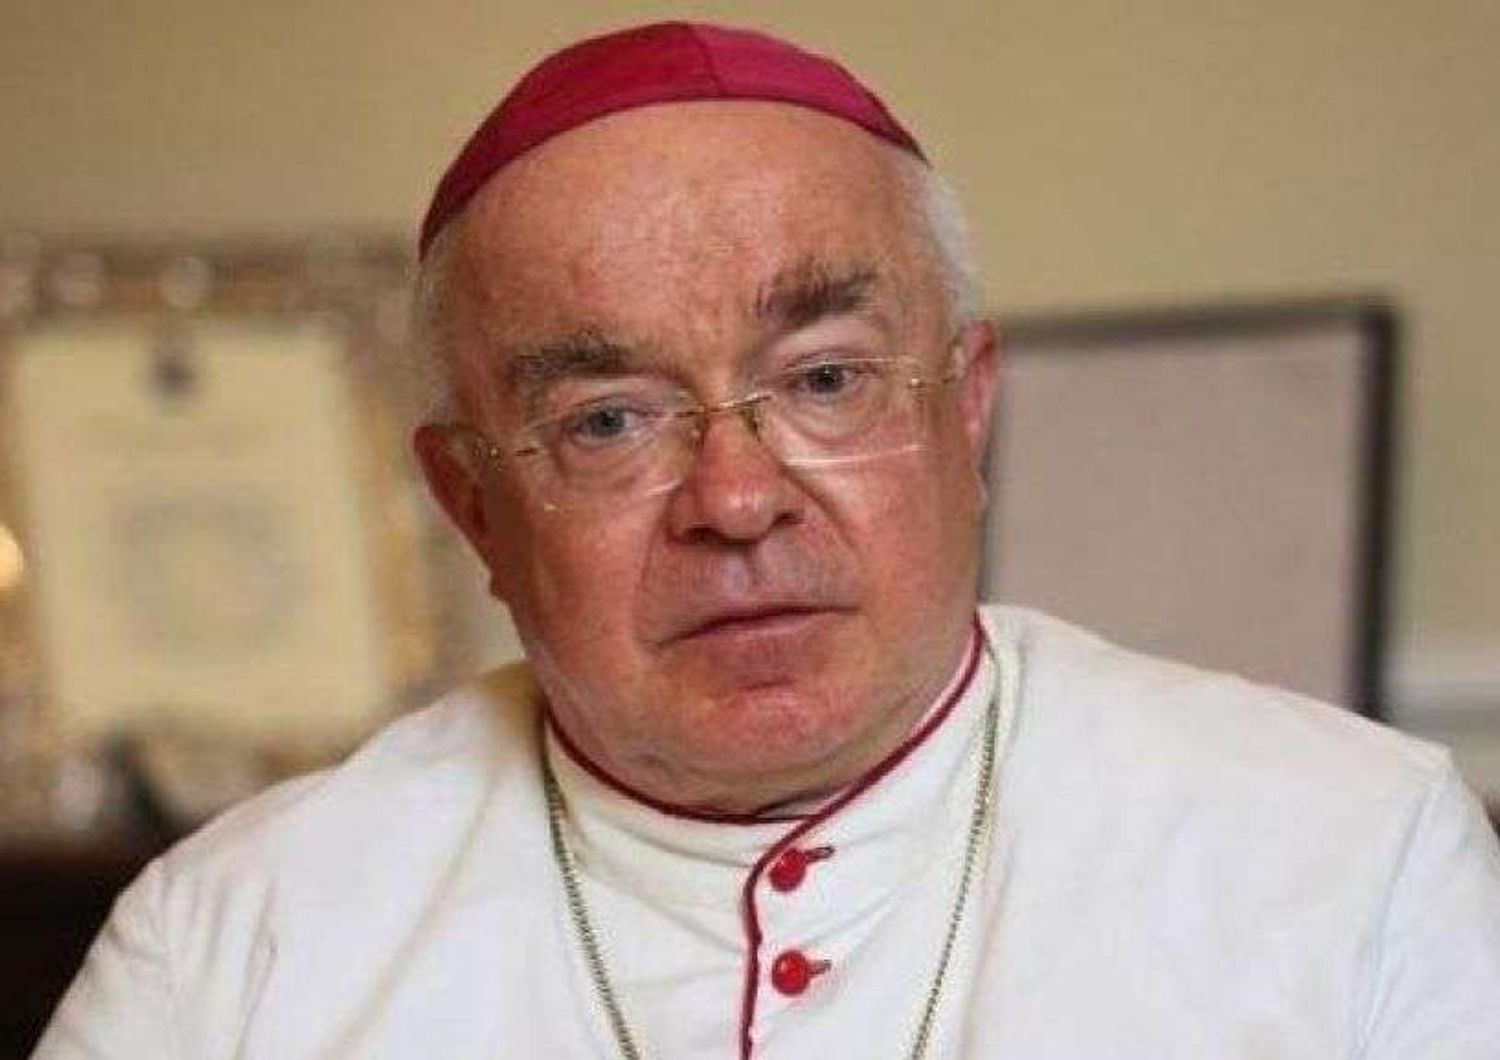 Arresto Wesolowski: Santa Sede, ex vescovo aveva materiale pedopornografico